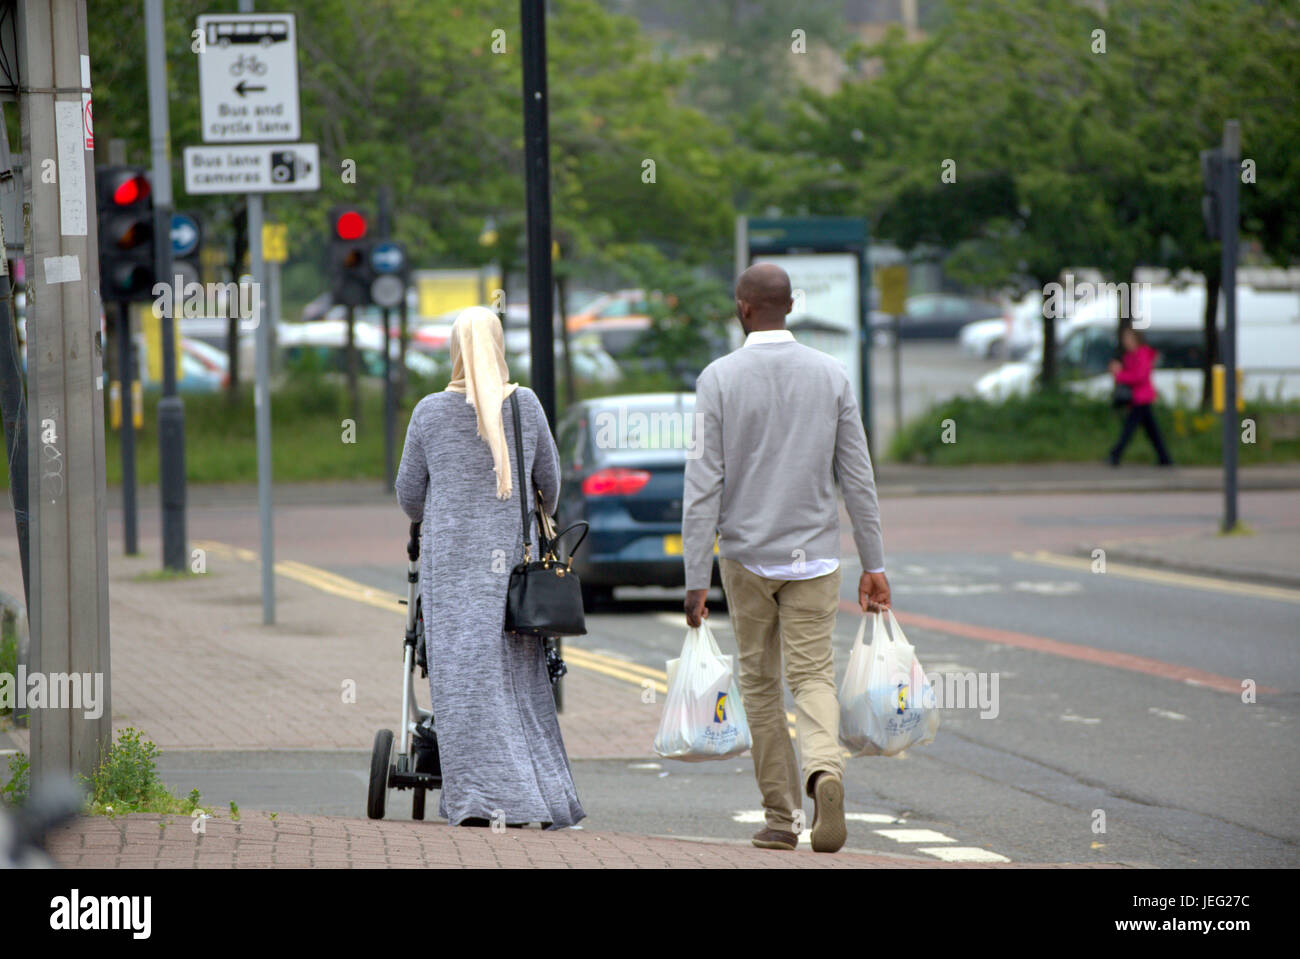 Asiatische Familie Flüchtling auf Straße in der UK alltägliche Szene Lidl Einkaufstaschen tragen Hijab Schal gekleidet Stockfoto